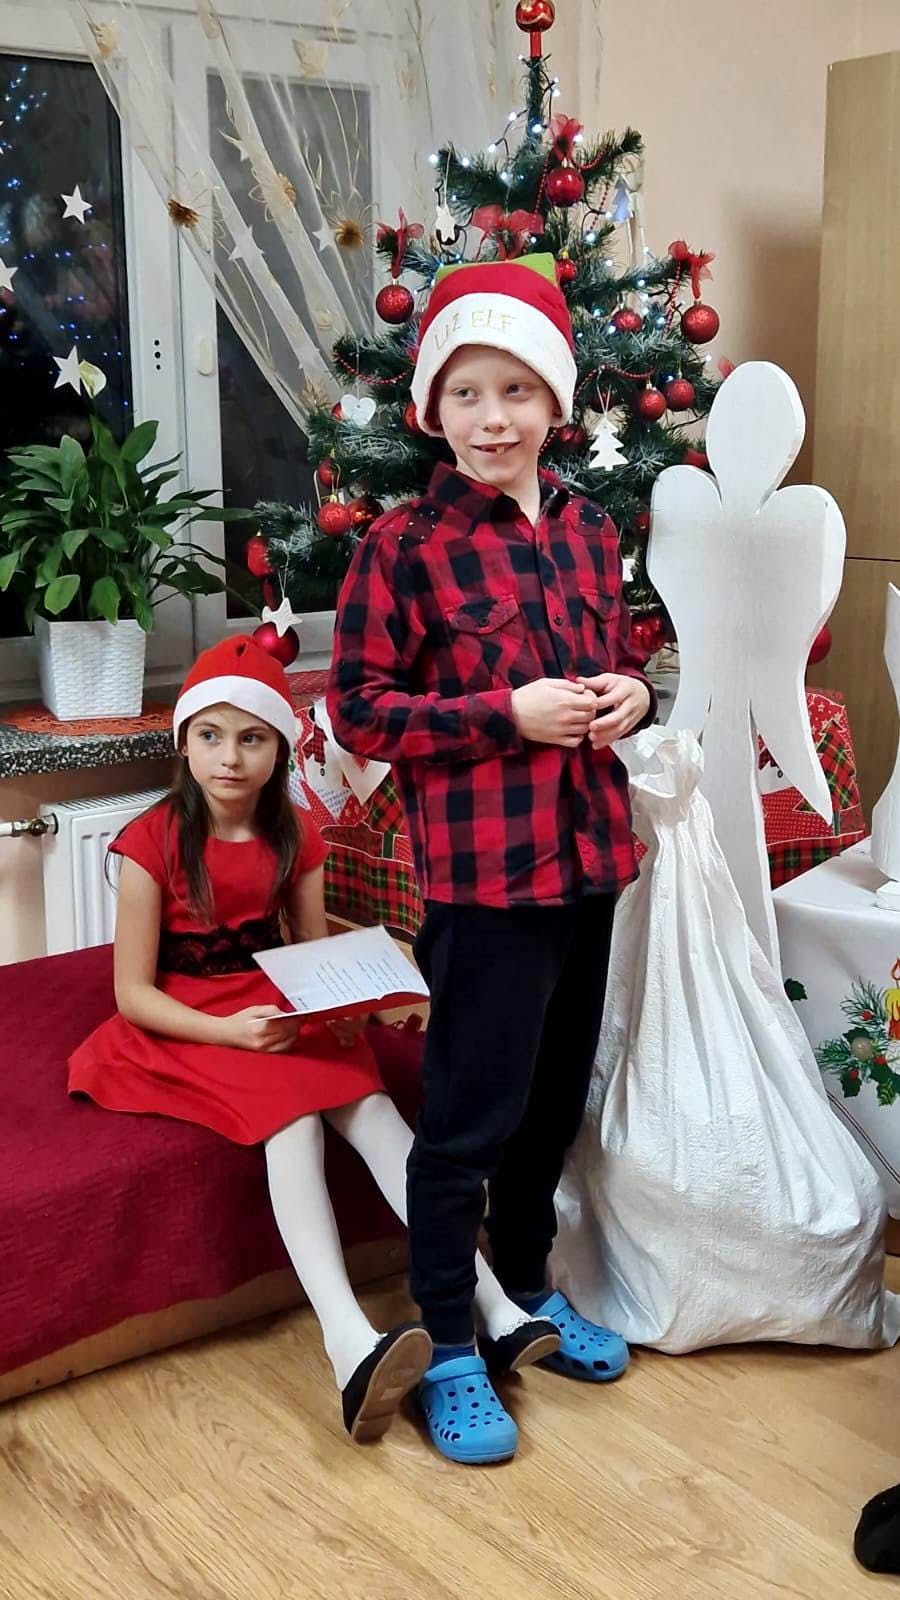 Niezapomniane spotkanie z Mikołajem! | Chłopiec stoi w czerwonej czapce, obiok siedzi dziewczynka .jpg